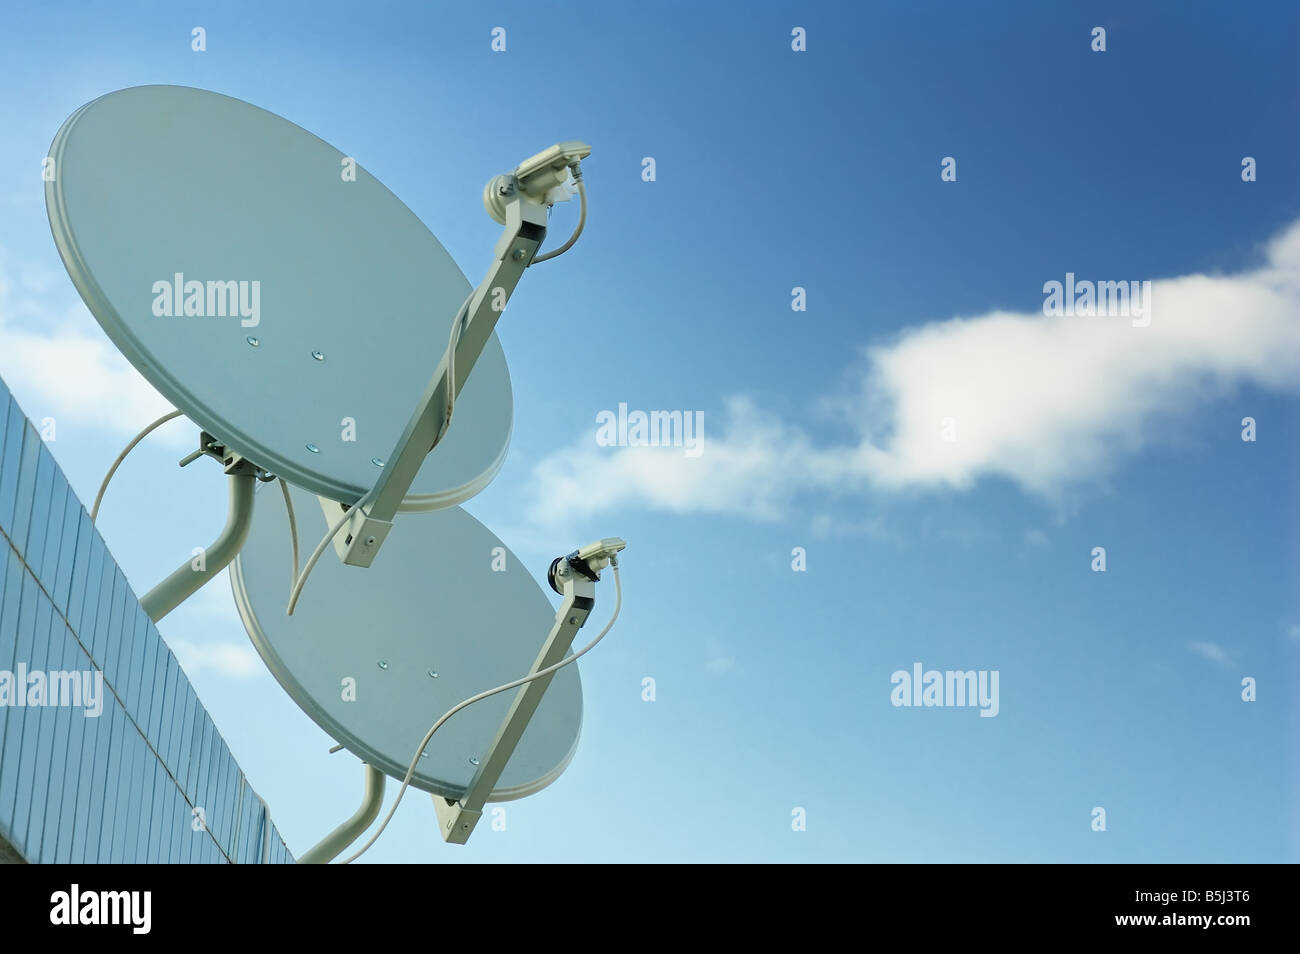 Antena de comunicaciones bajo un cielo azul Foto de stock